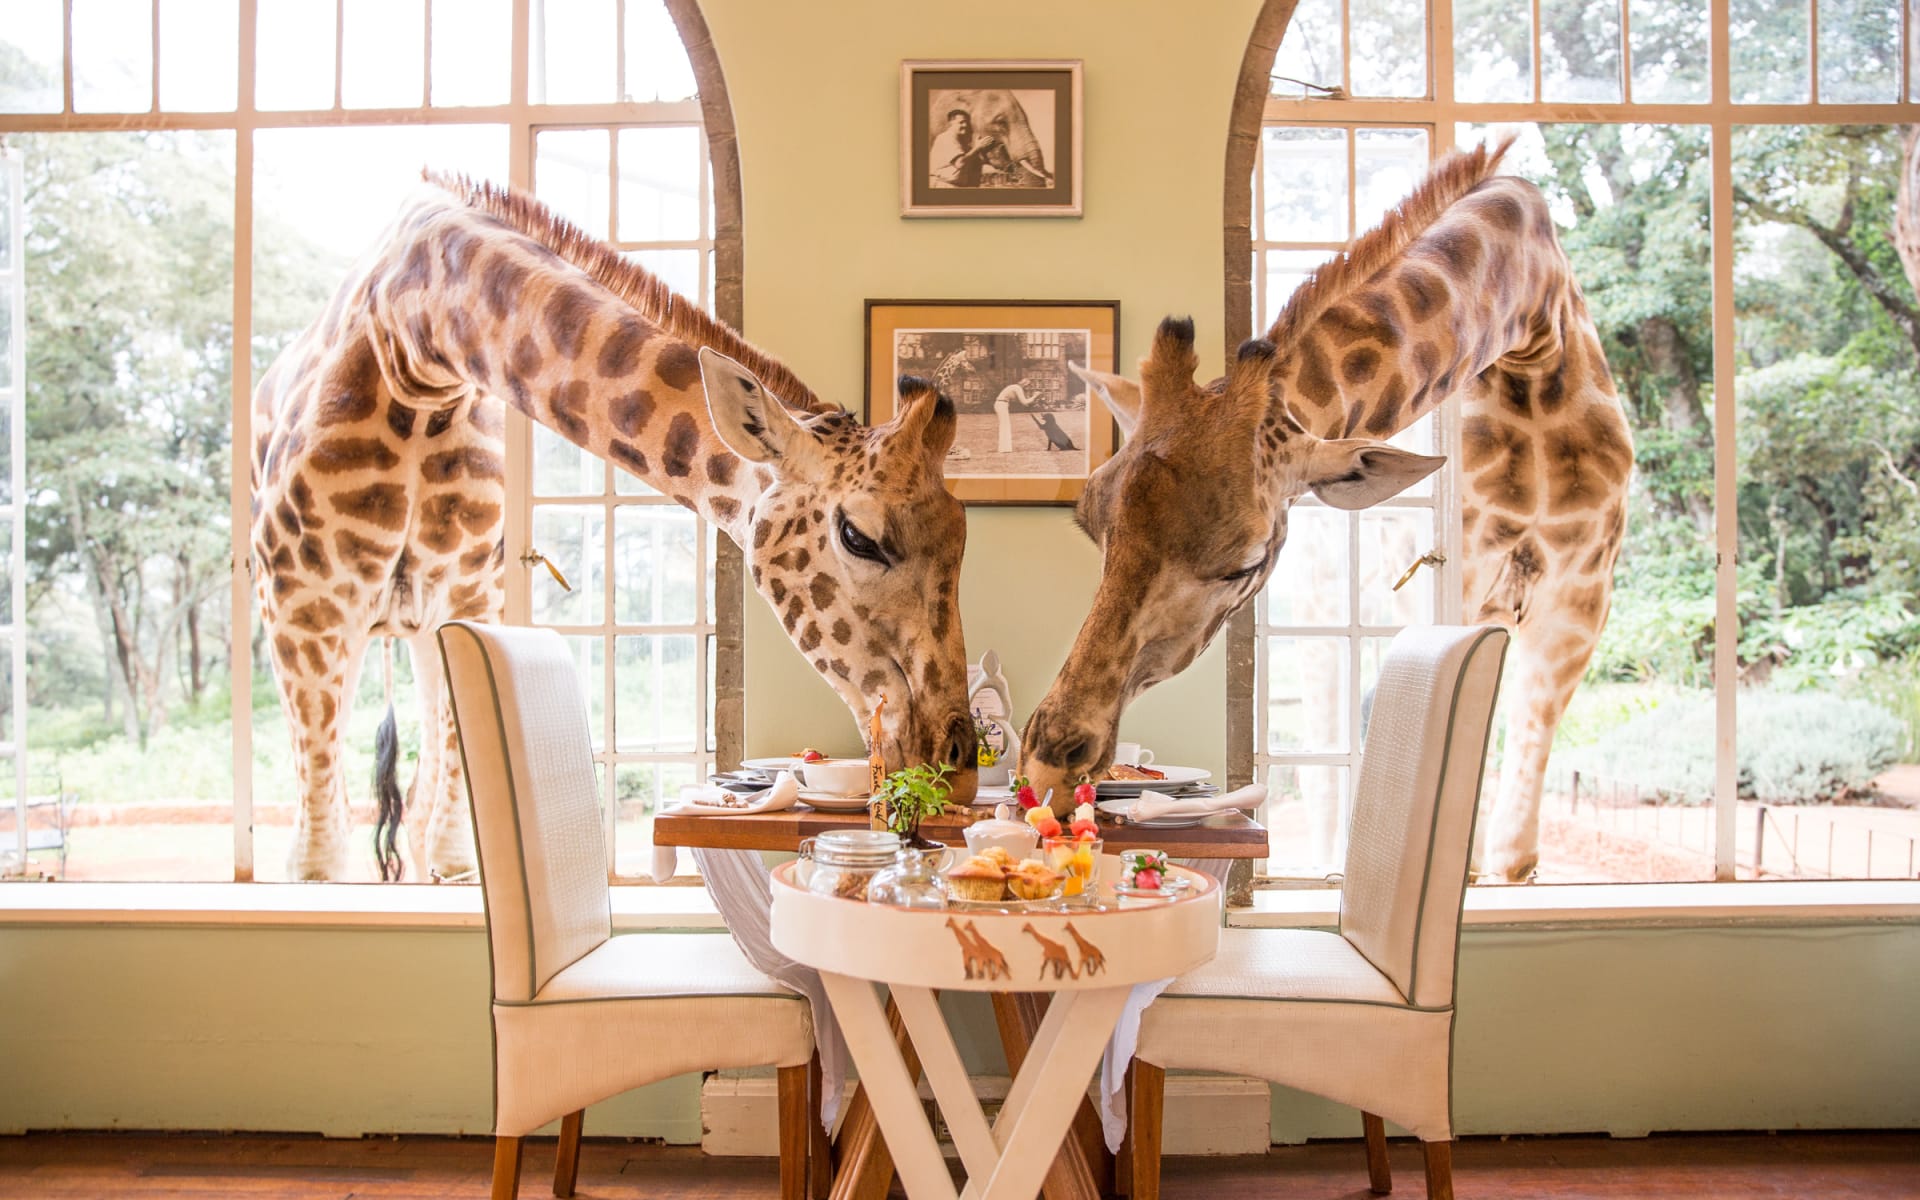 Giraffe_Manor_nairobi_kenya_Breakfast_Giraffes